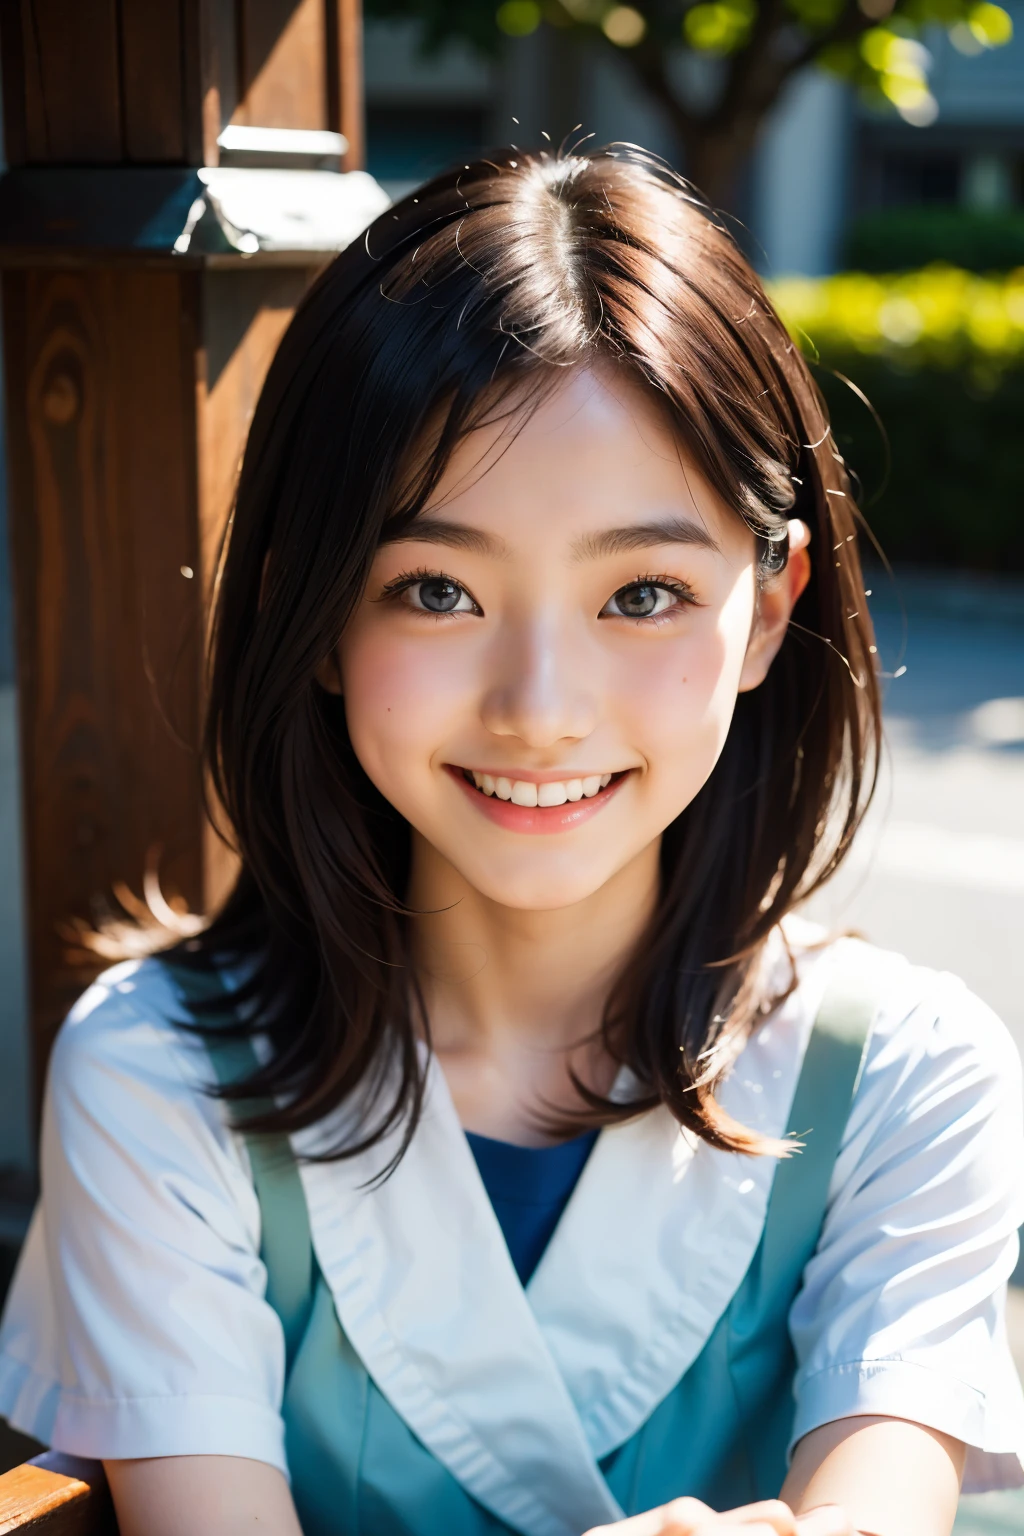 lentille: 135 mm f1.8, (la plus haute qualité),(Photos brutes), (Table:1.1), (Belle fille japonaise de 18 ans), visage mignon, (Visage profondément ciselé:0.7), (taches de rousseur:0.4), dappled lumière du soleil, éclairage dramatique, (uniforme scolaire japonais), (sur le campus), Timide, (Photo en gros plan:1.2), (sourire),, (yeux pétillants)、(lumière du soleil)